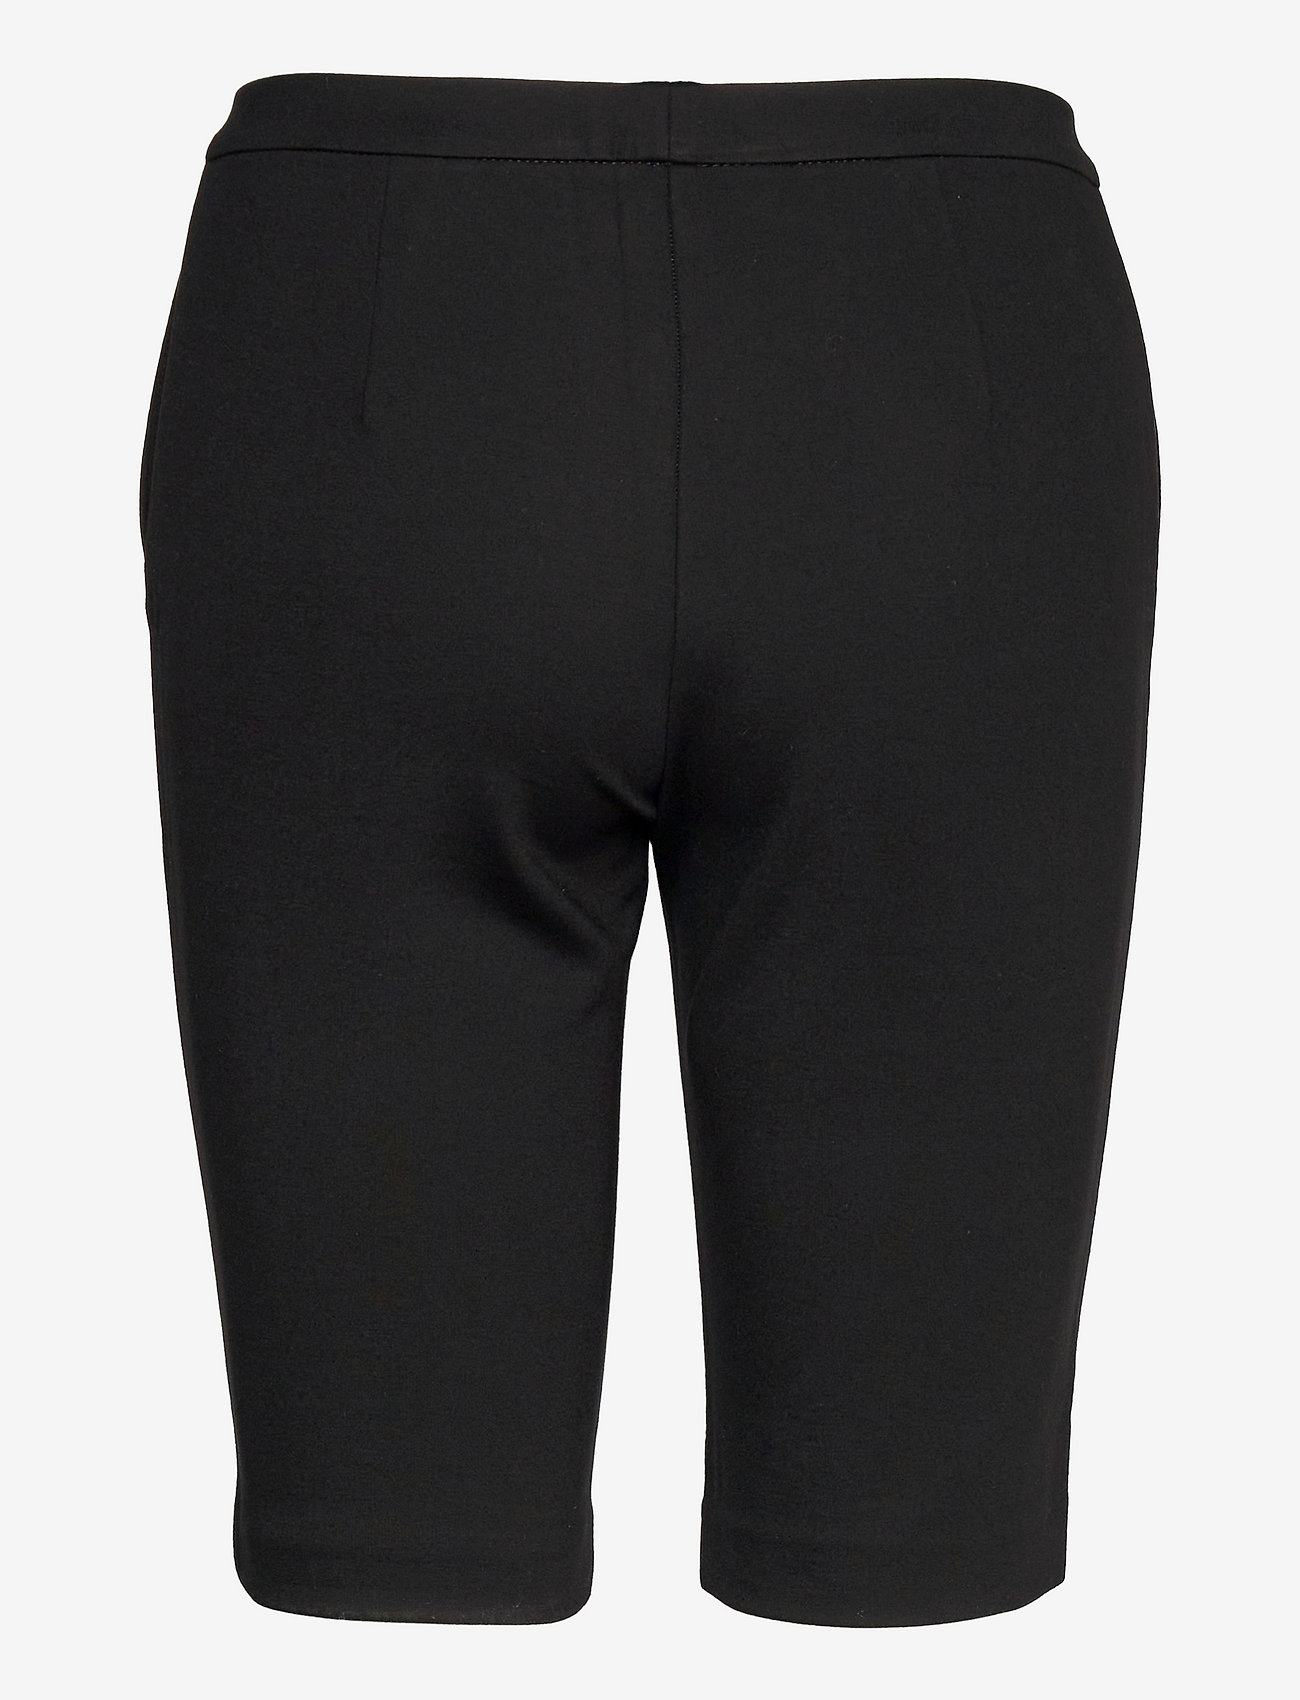 Modström - Tanny shorts - cykelshorts - black - 1